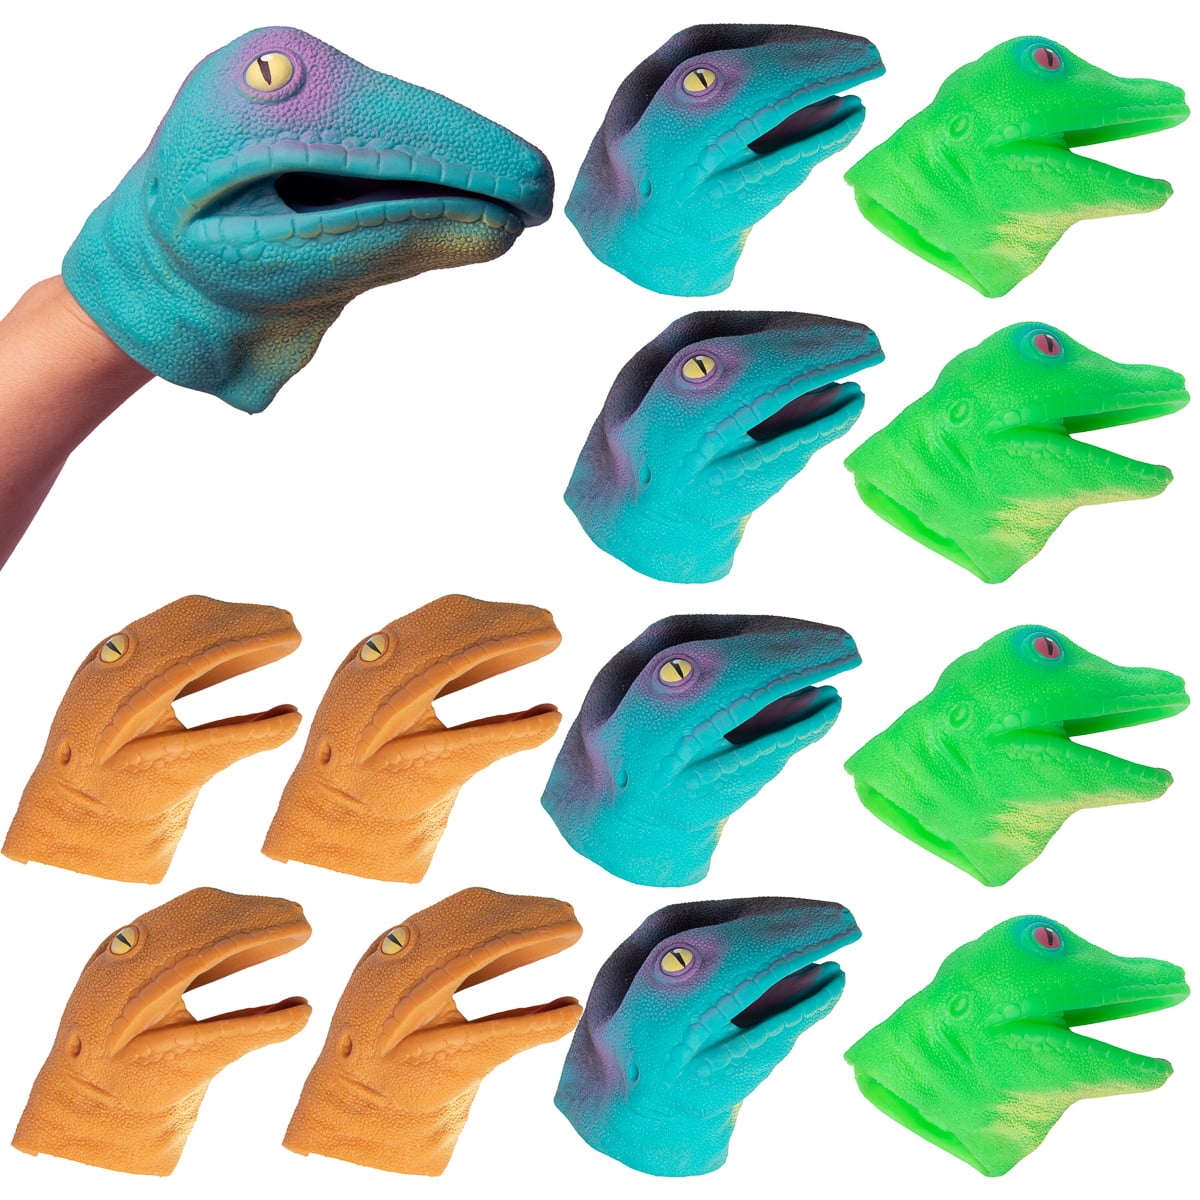 lizard hand puppet